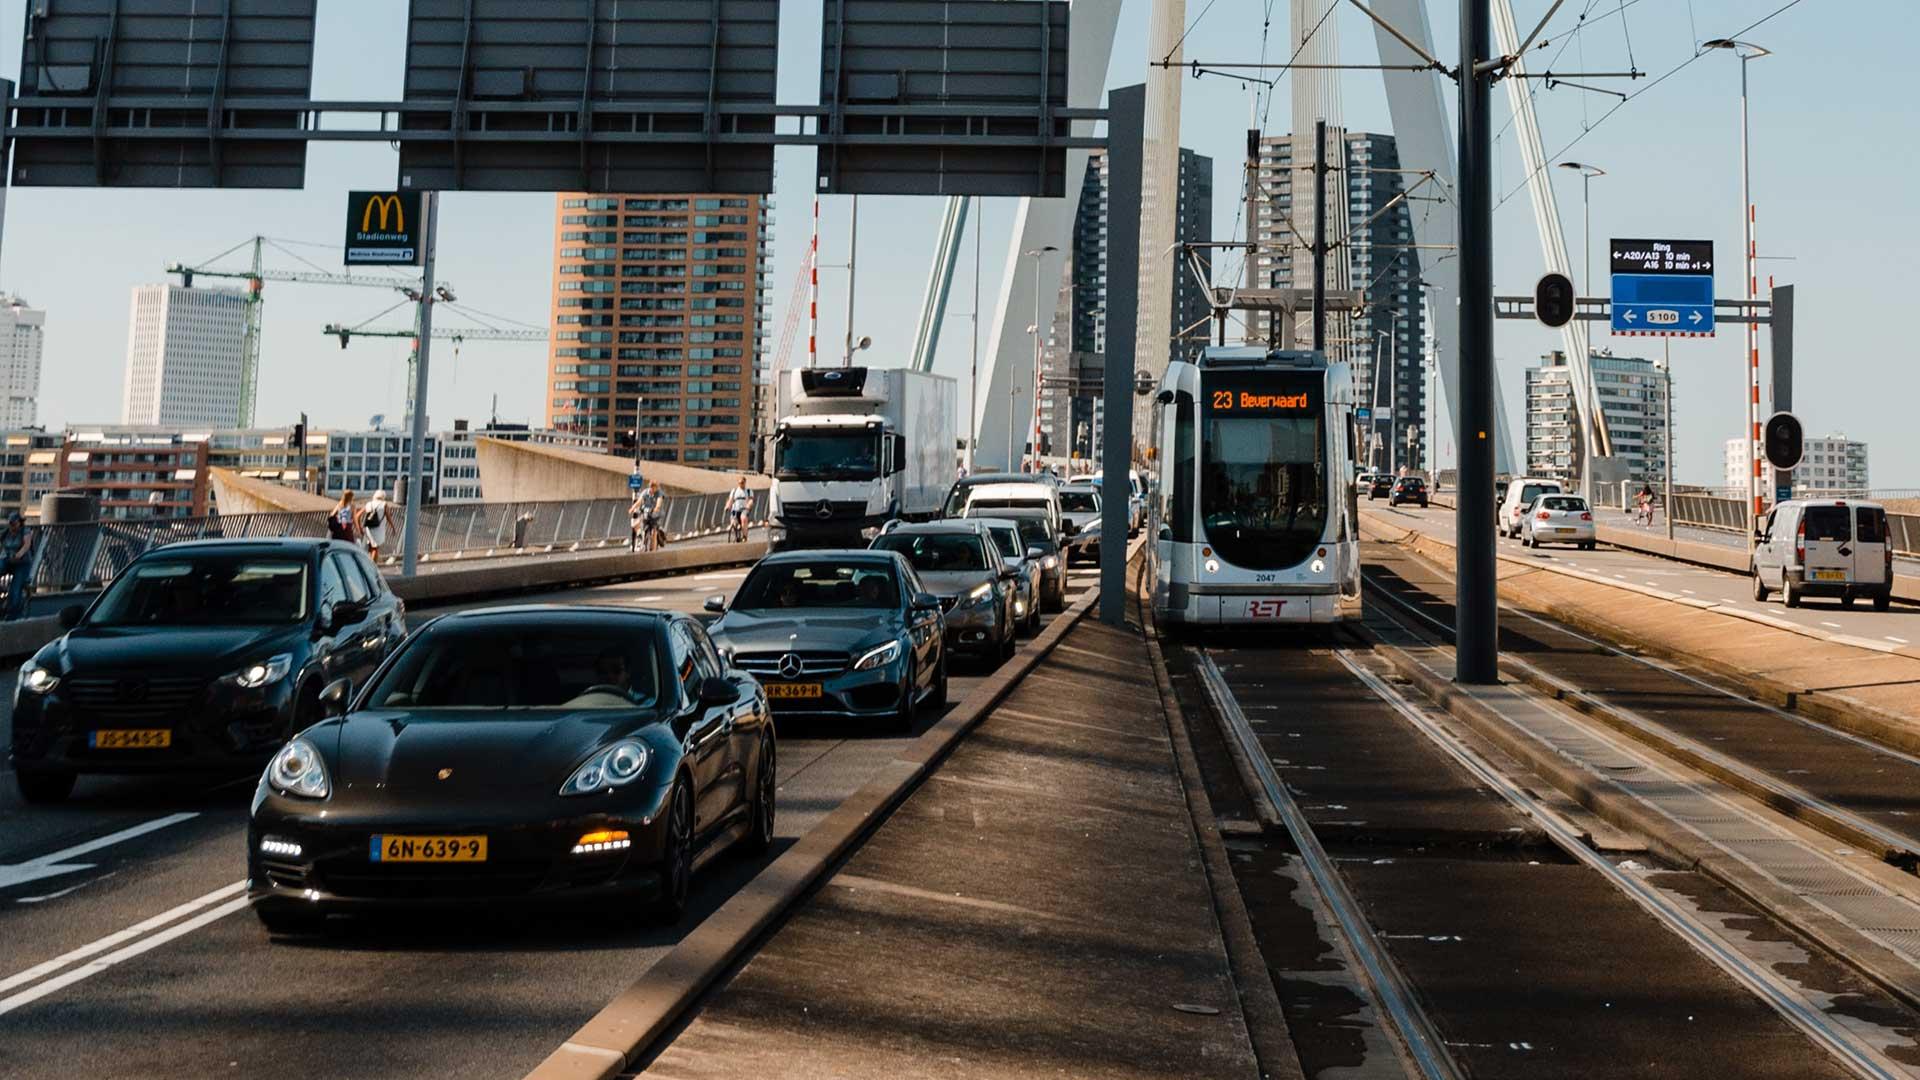 Verkeer in Nederland op een brug (Unsplash)